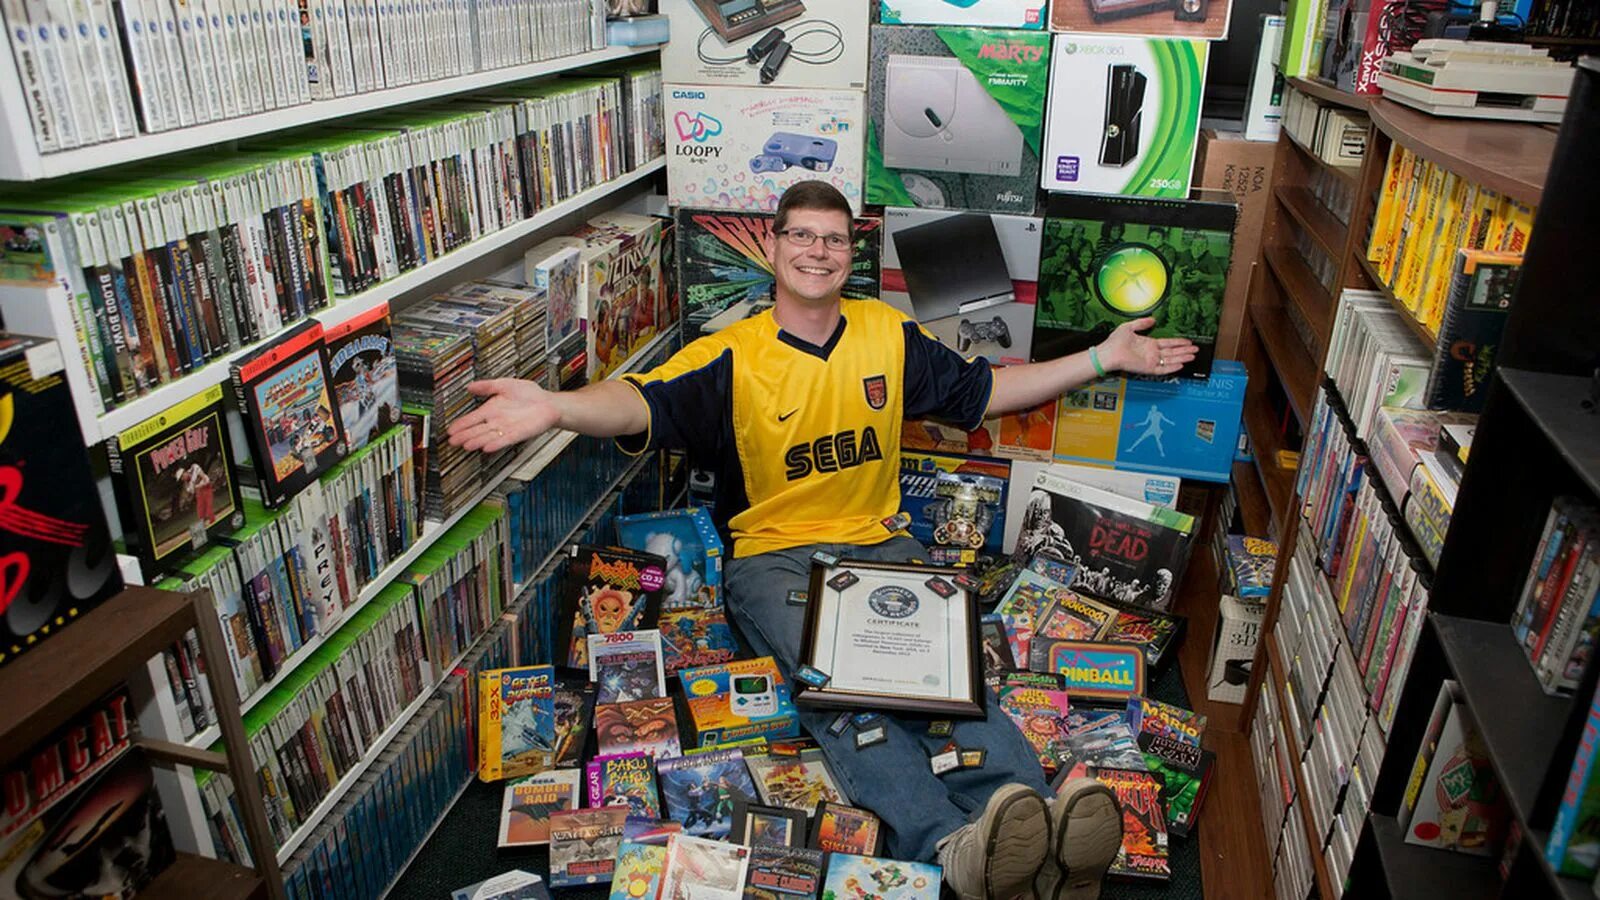 Игры книжный магазин. Самая большая коллекция игр. Коллекционер игровых приставок. Коллекционирование компьютерных игр. Самая большая коллекция видеоигр в мире.